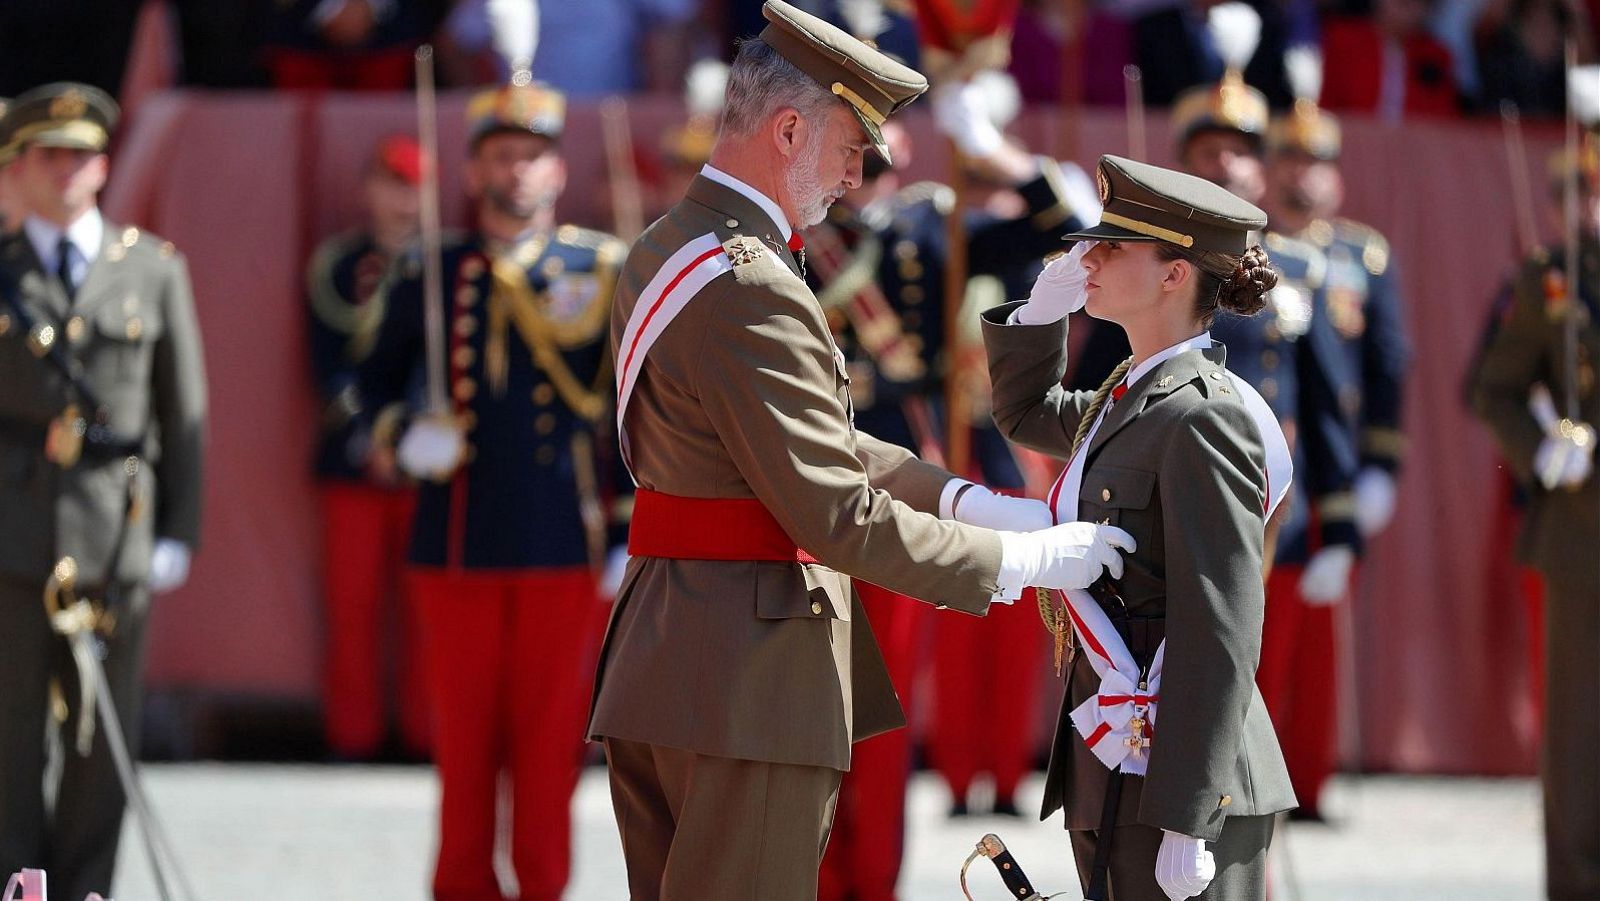 La princesa Leonor recibe su formación militar en Zaragoza y recibe su nombramiento como dama alférez cadete